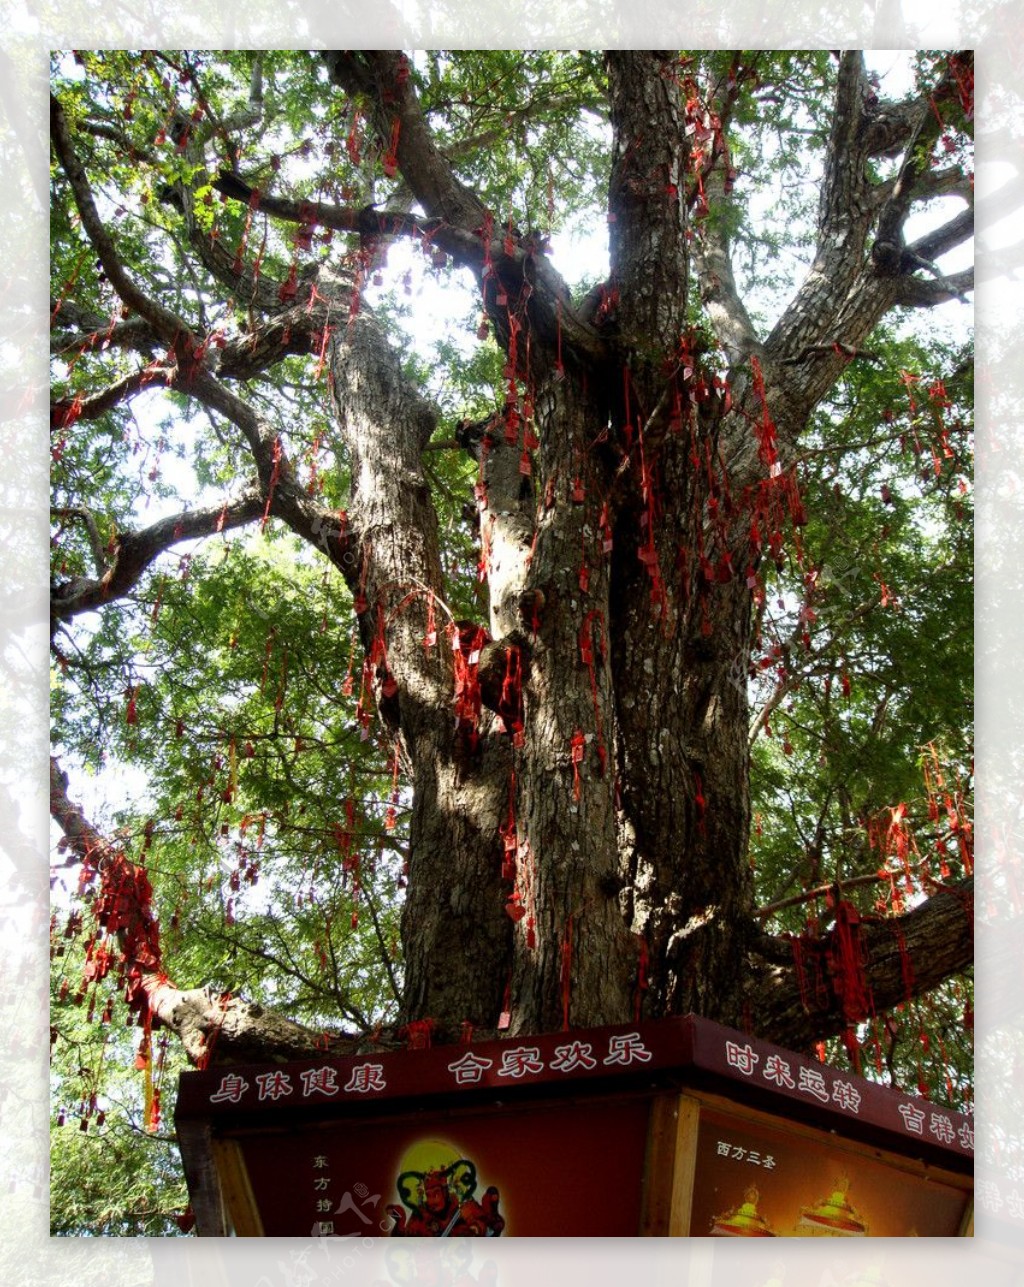 挂满红飘带的许愿树图片